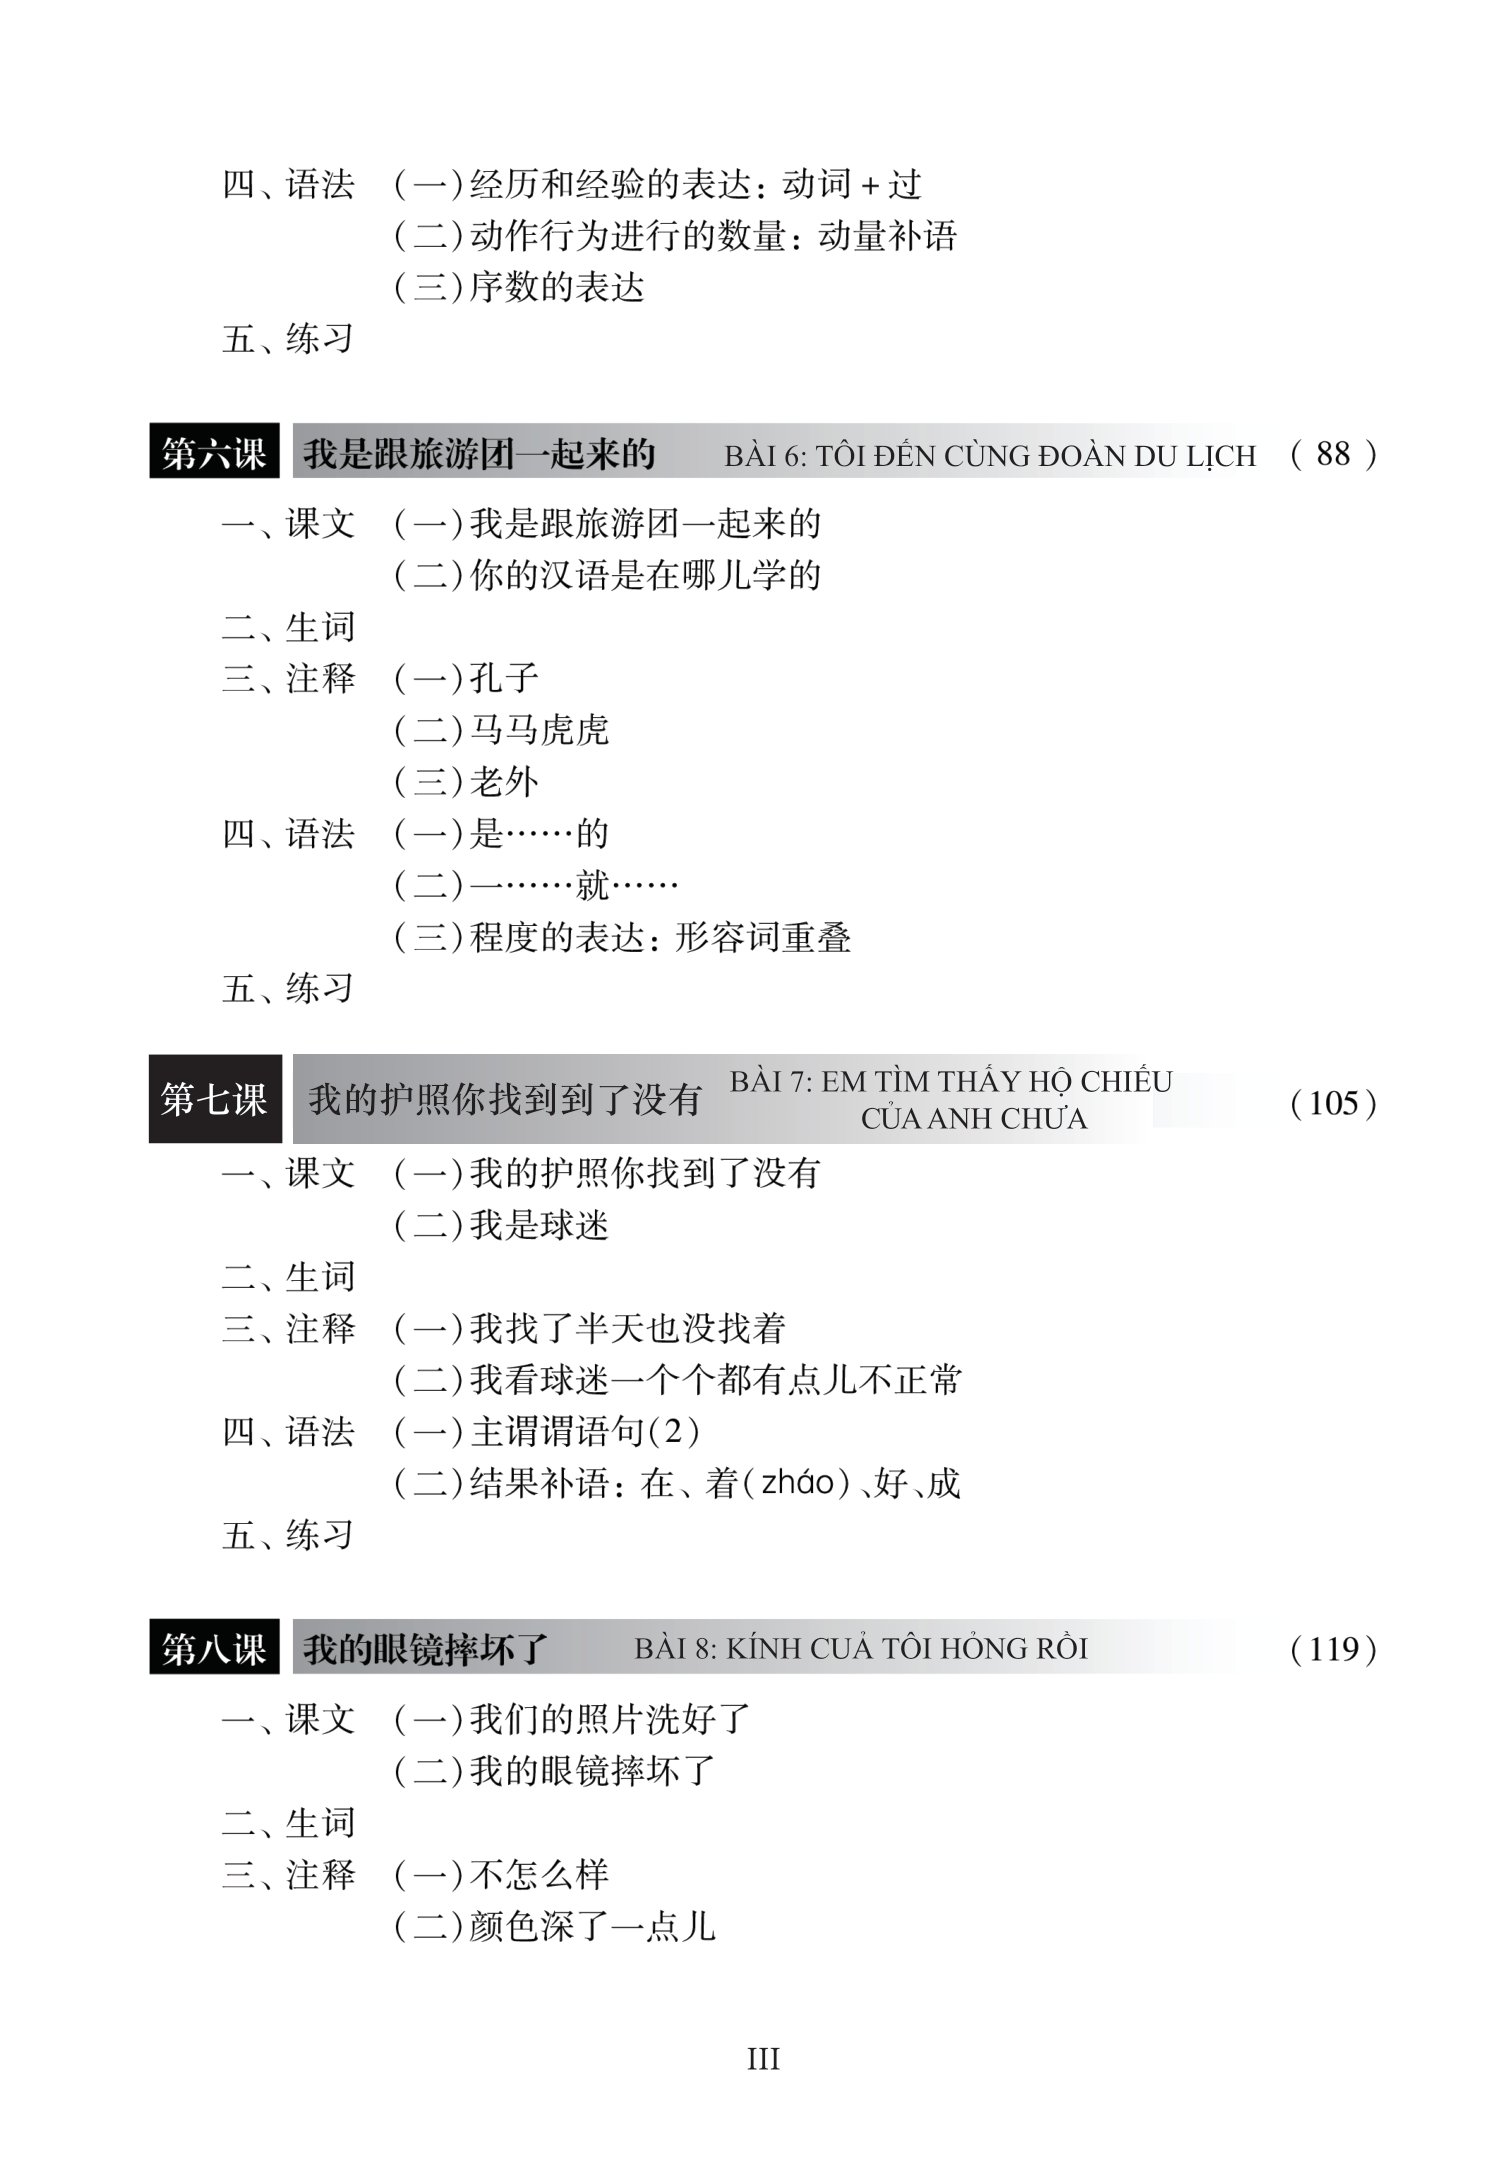 Giáo Trình Hán Ngữ 3 - Tập 2 - Quyển Thượng Phiên Bản Mới - App PDF